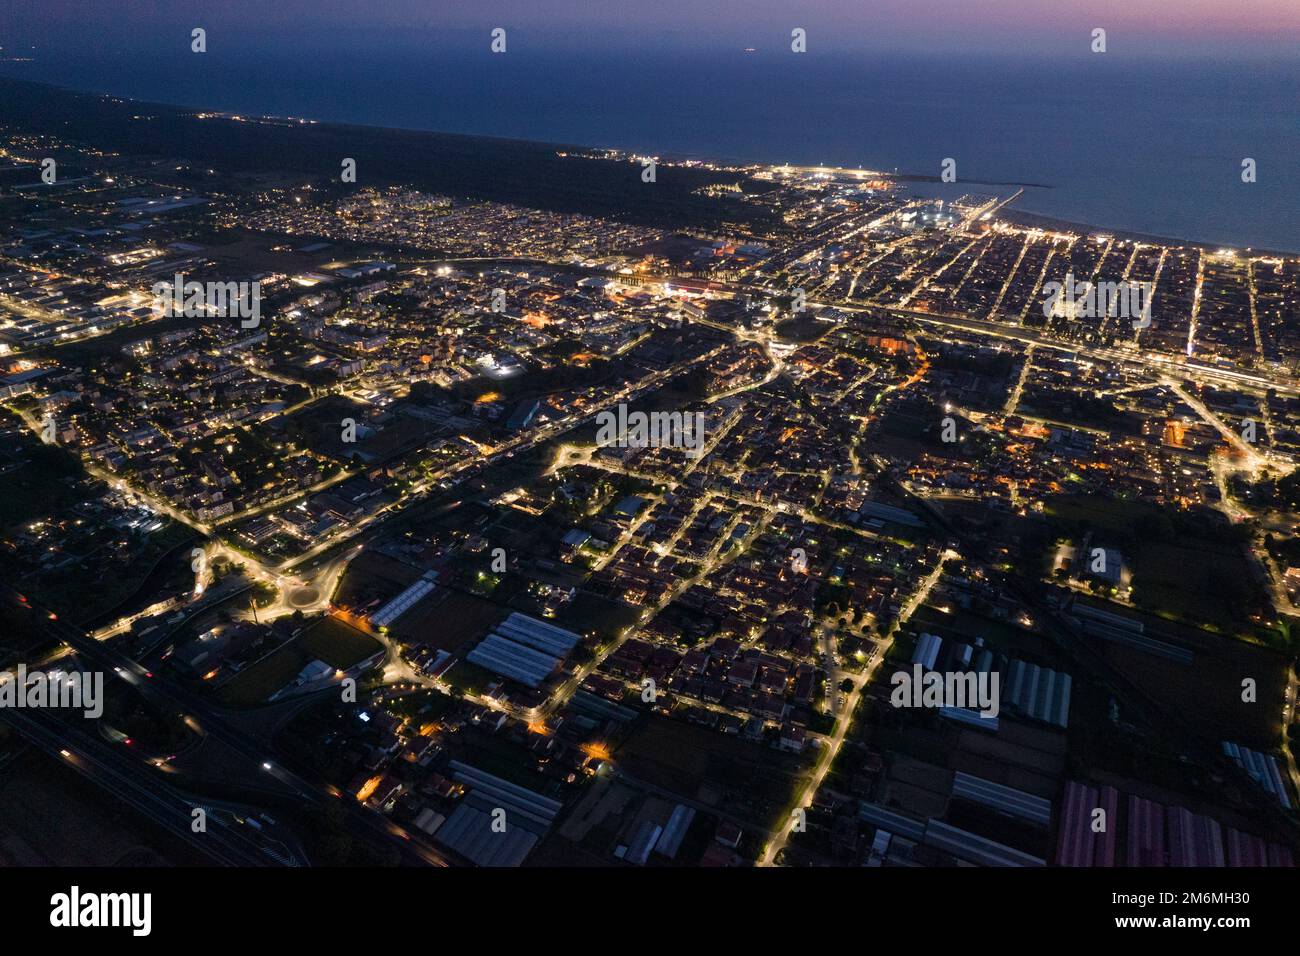 Viareggio city aerial view at night Stock Photo